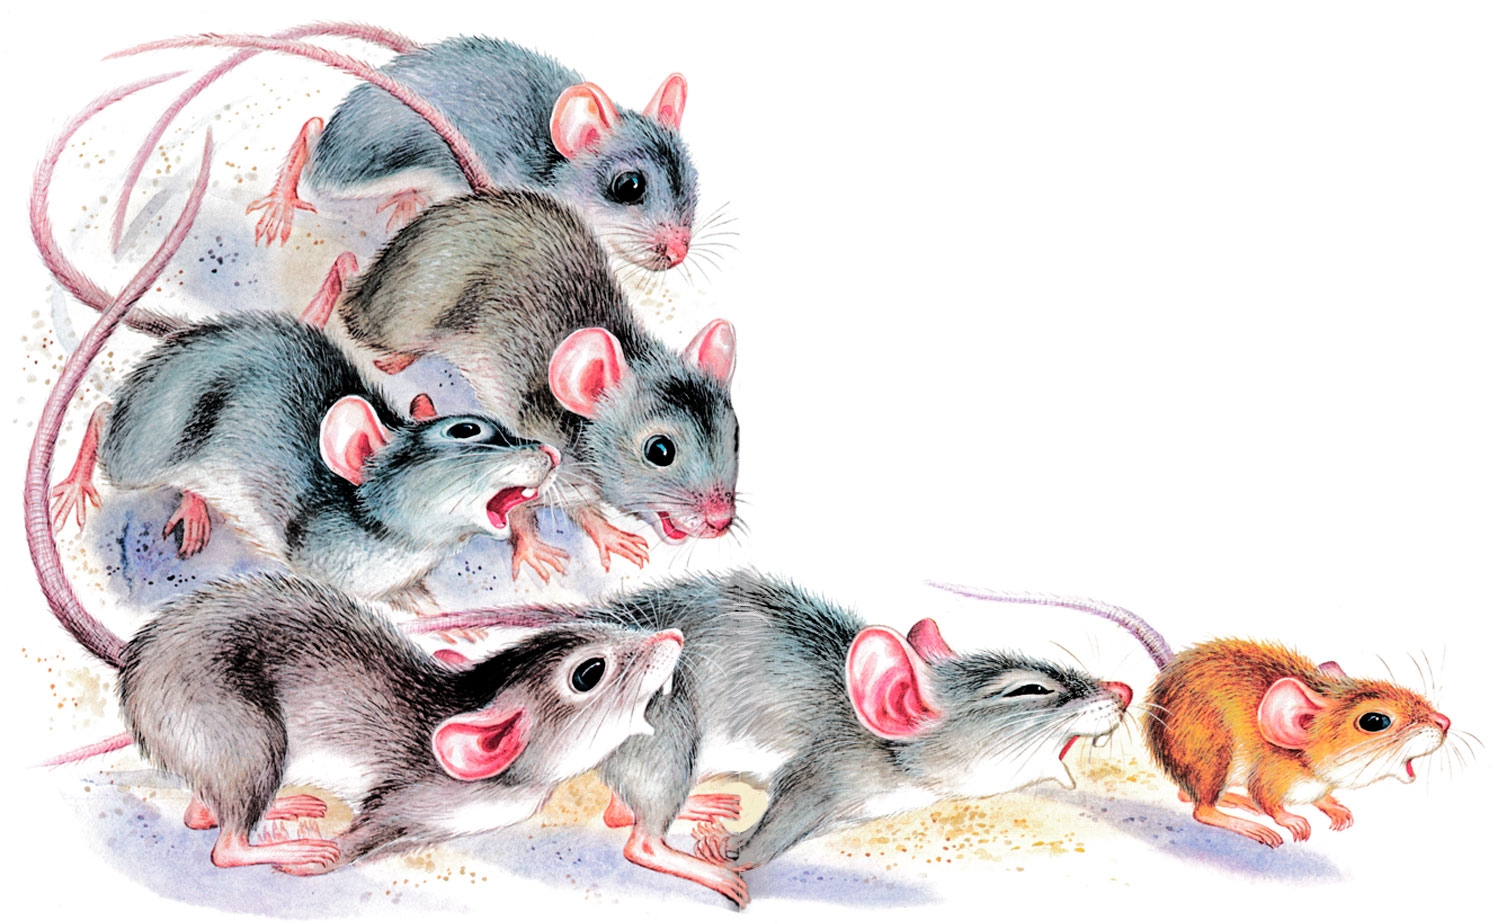 Развитие мышей. Мышка картинка. Мышь картинка для детей. Семья крыс арт. Мышонок картинка для детей.